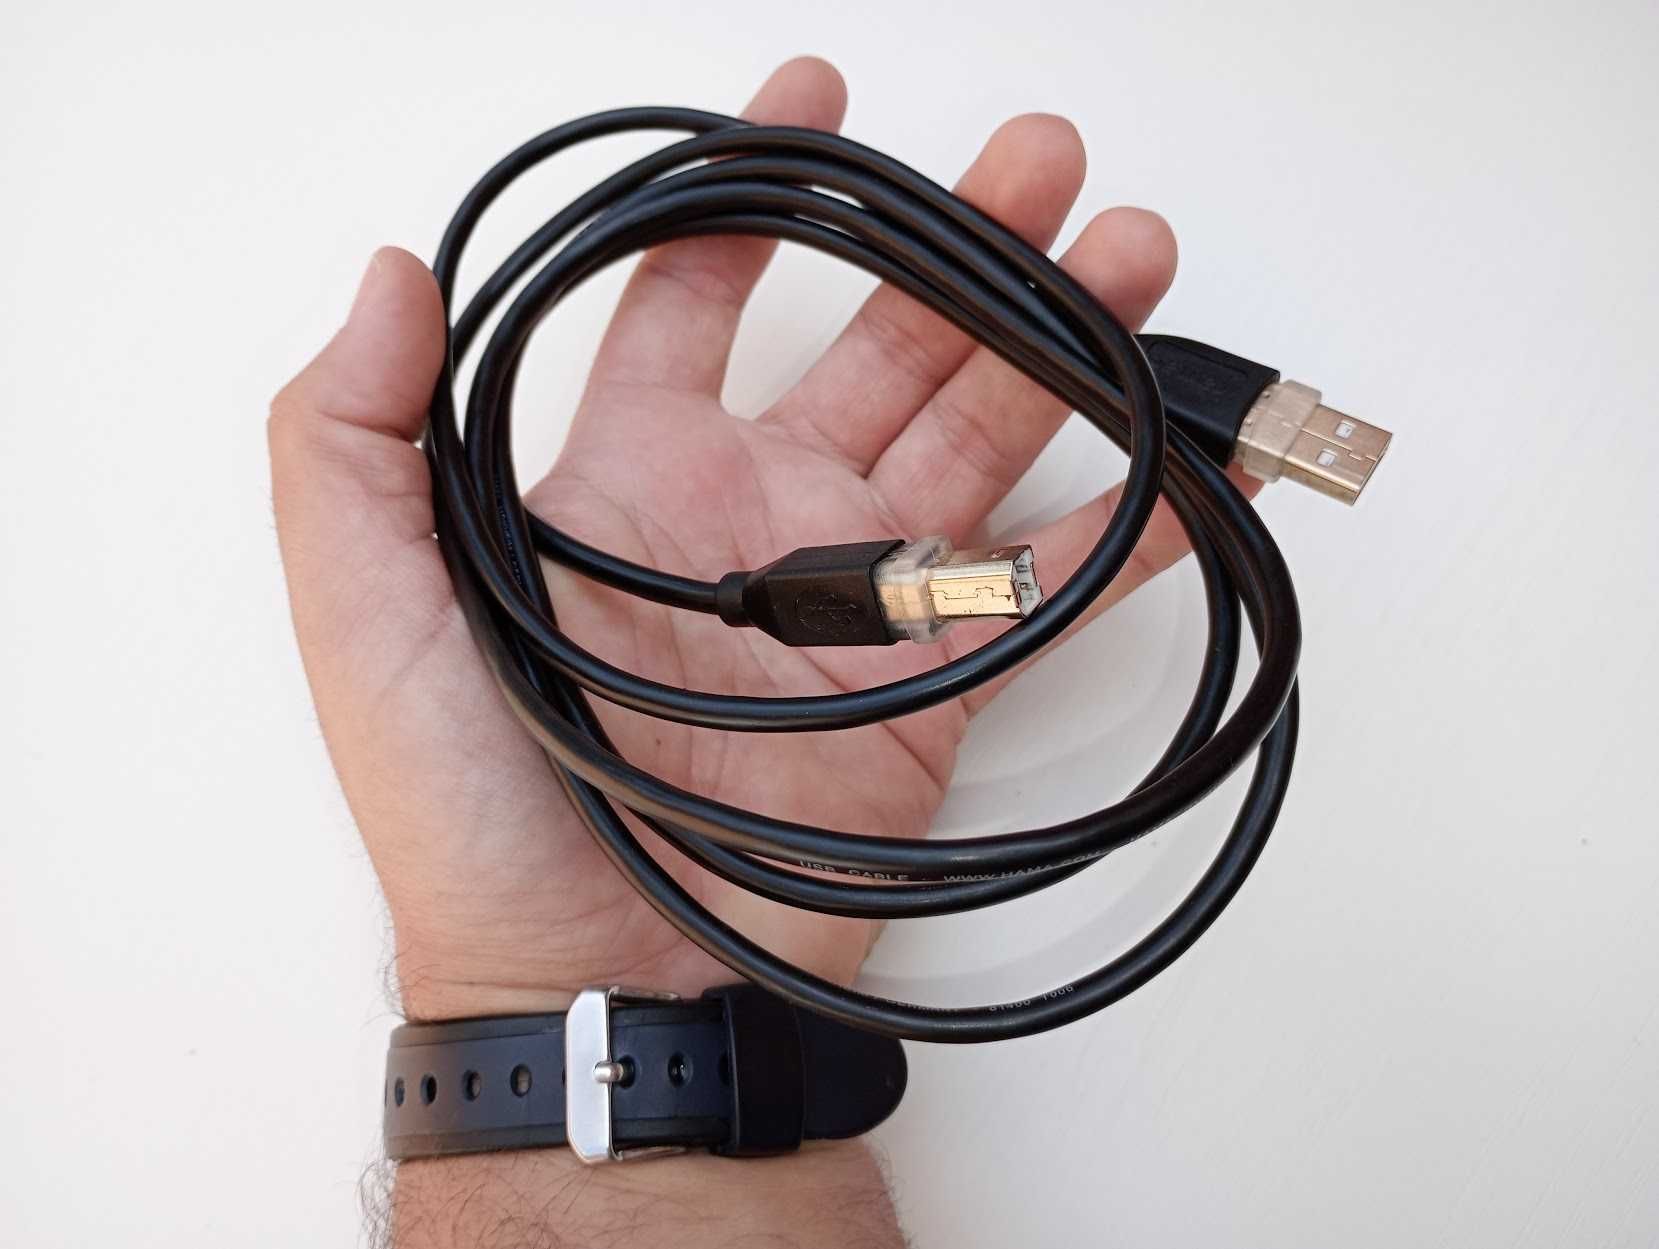 Cablu Hama ecranare dubla, mufa USB type B 1.9m pt imprimanta,scaner